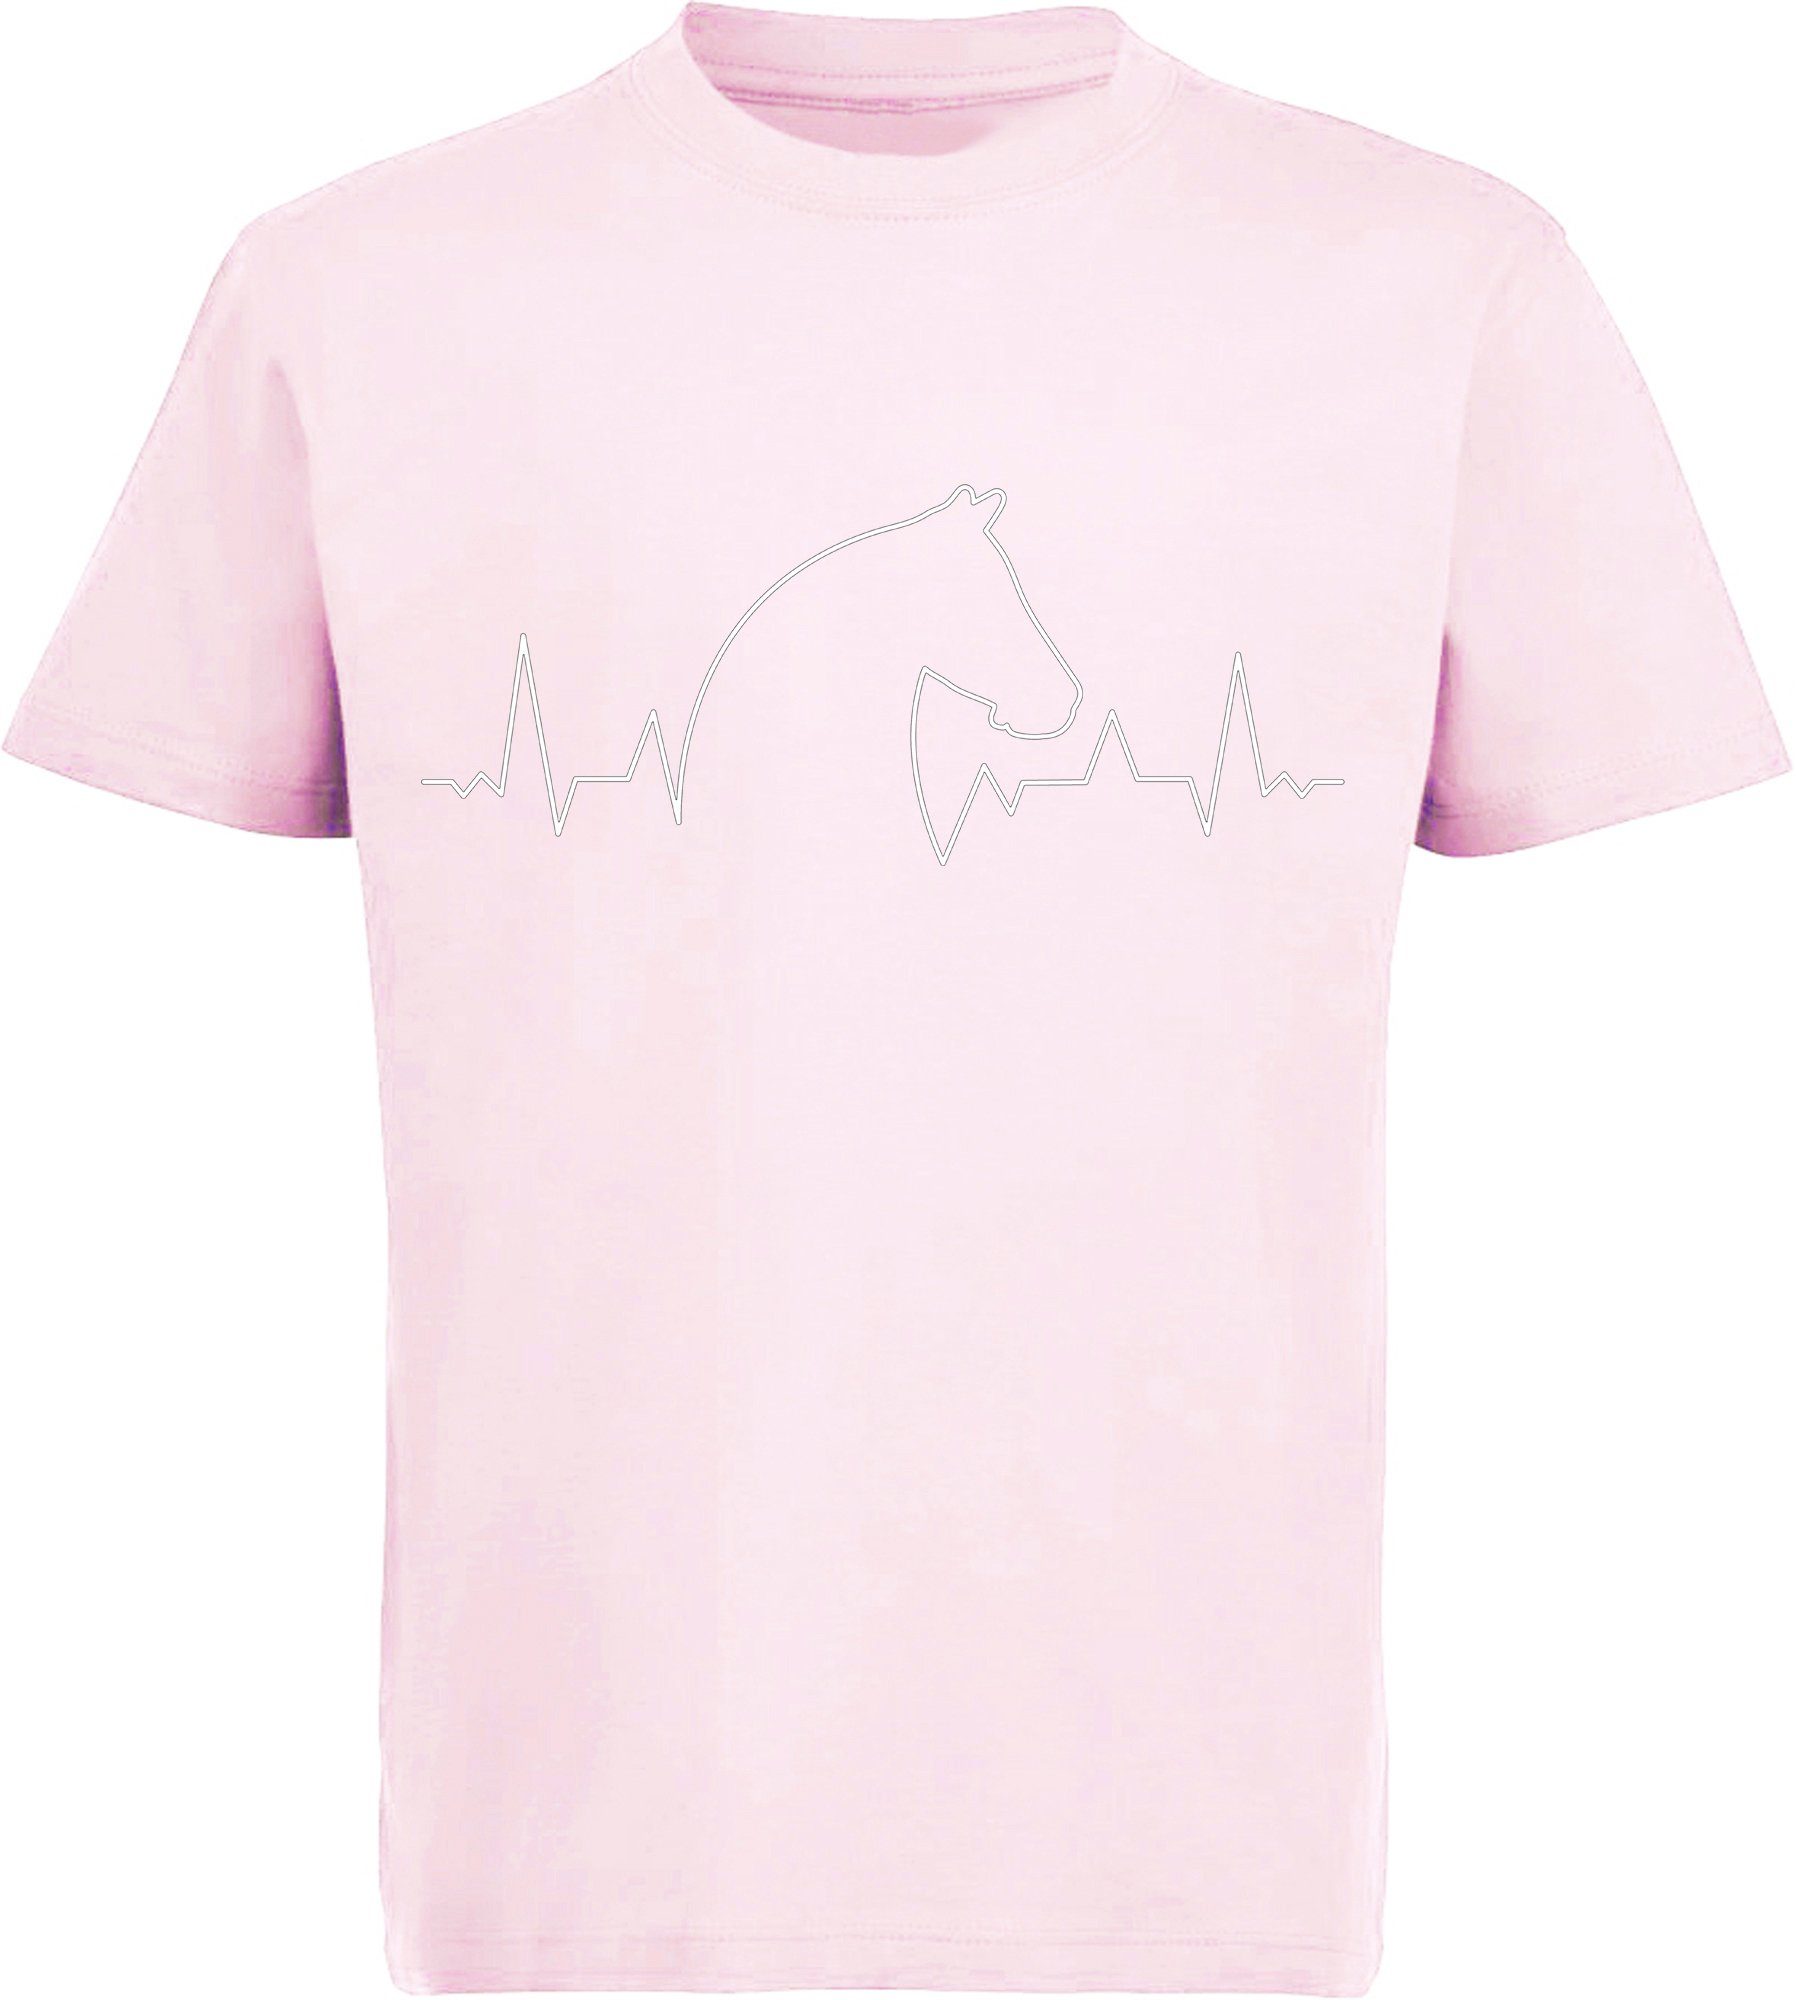 mit T-Shirt Aufdruck, Print-Shirt i154 Herzschlaglinie MyDesign24 mit bedrucktes Baumwollshirt rosa Pferdekopf Kinder